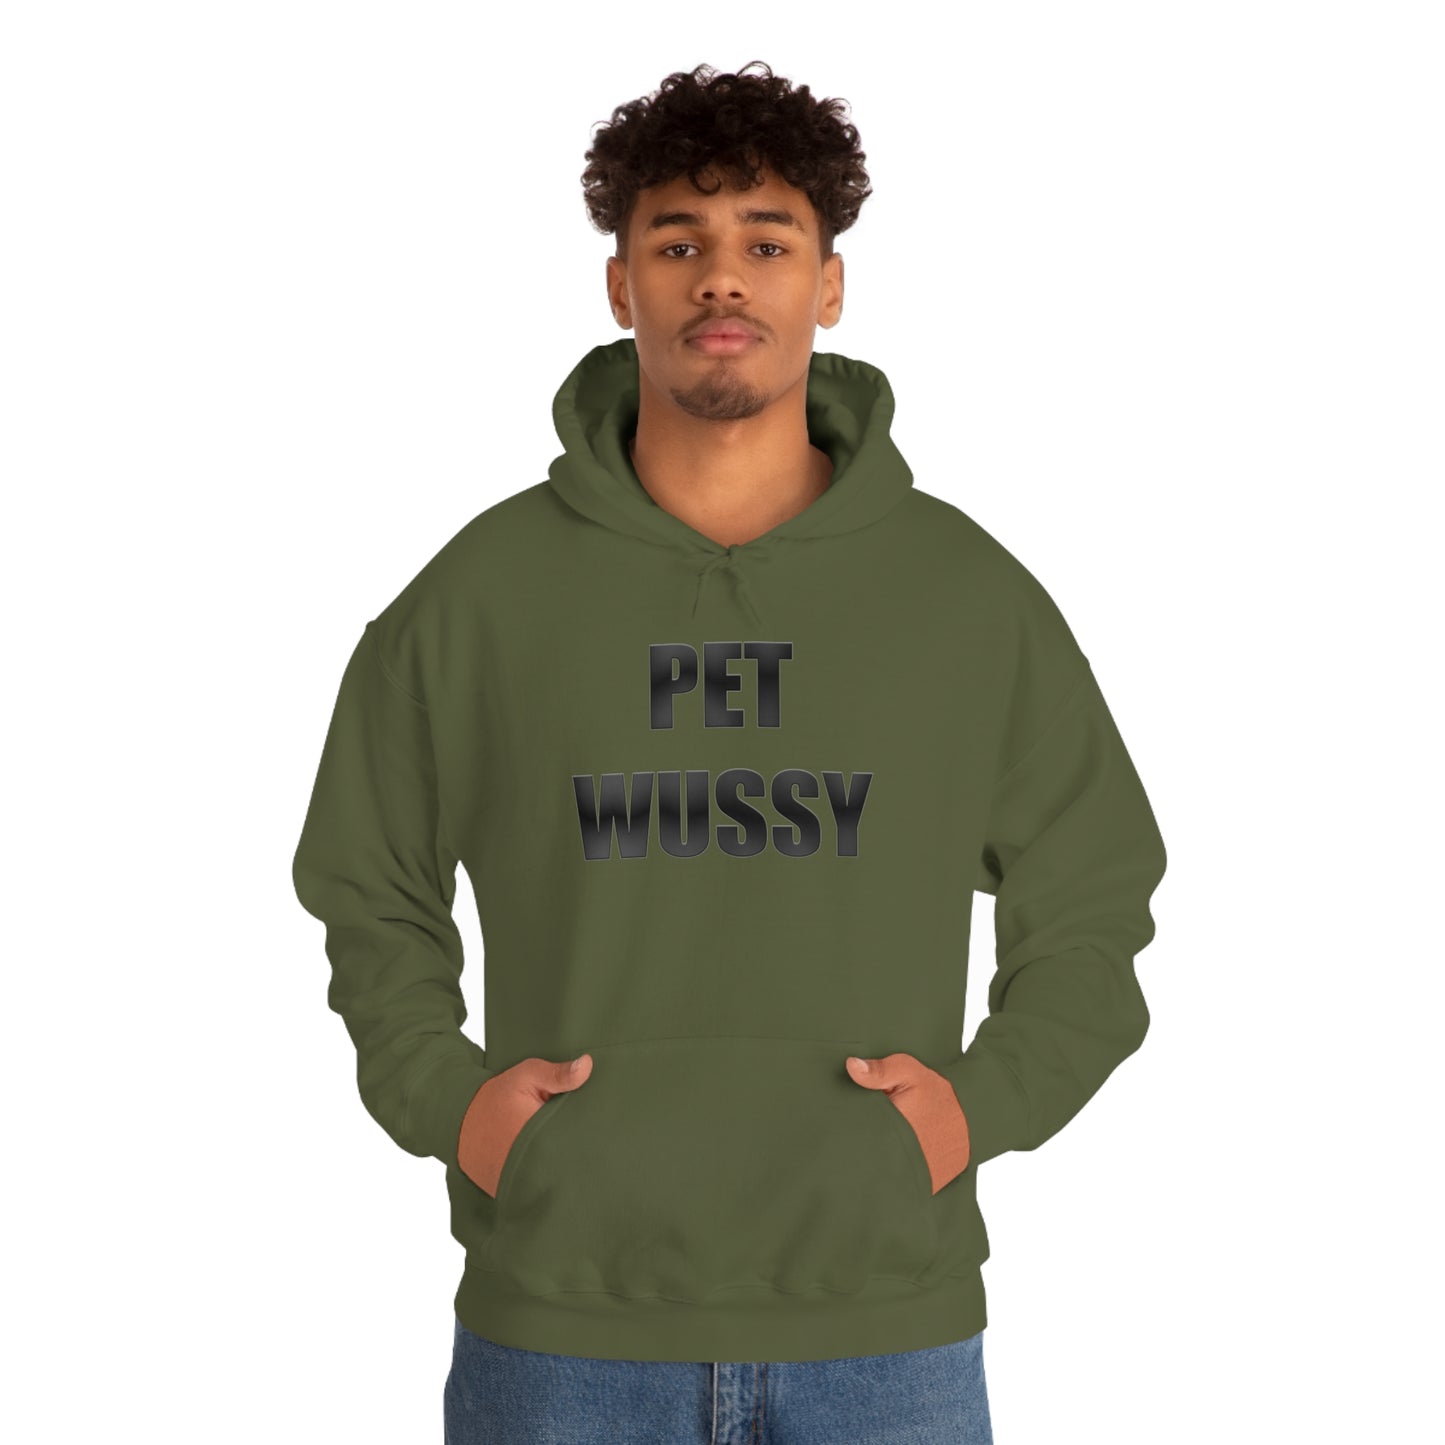 Pet Wussy Hoodie™